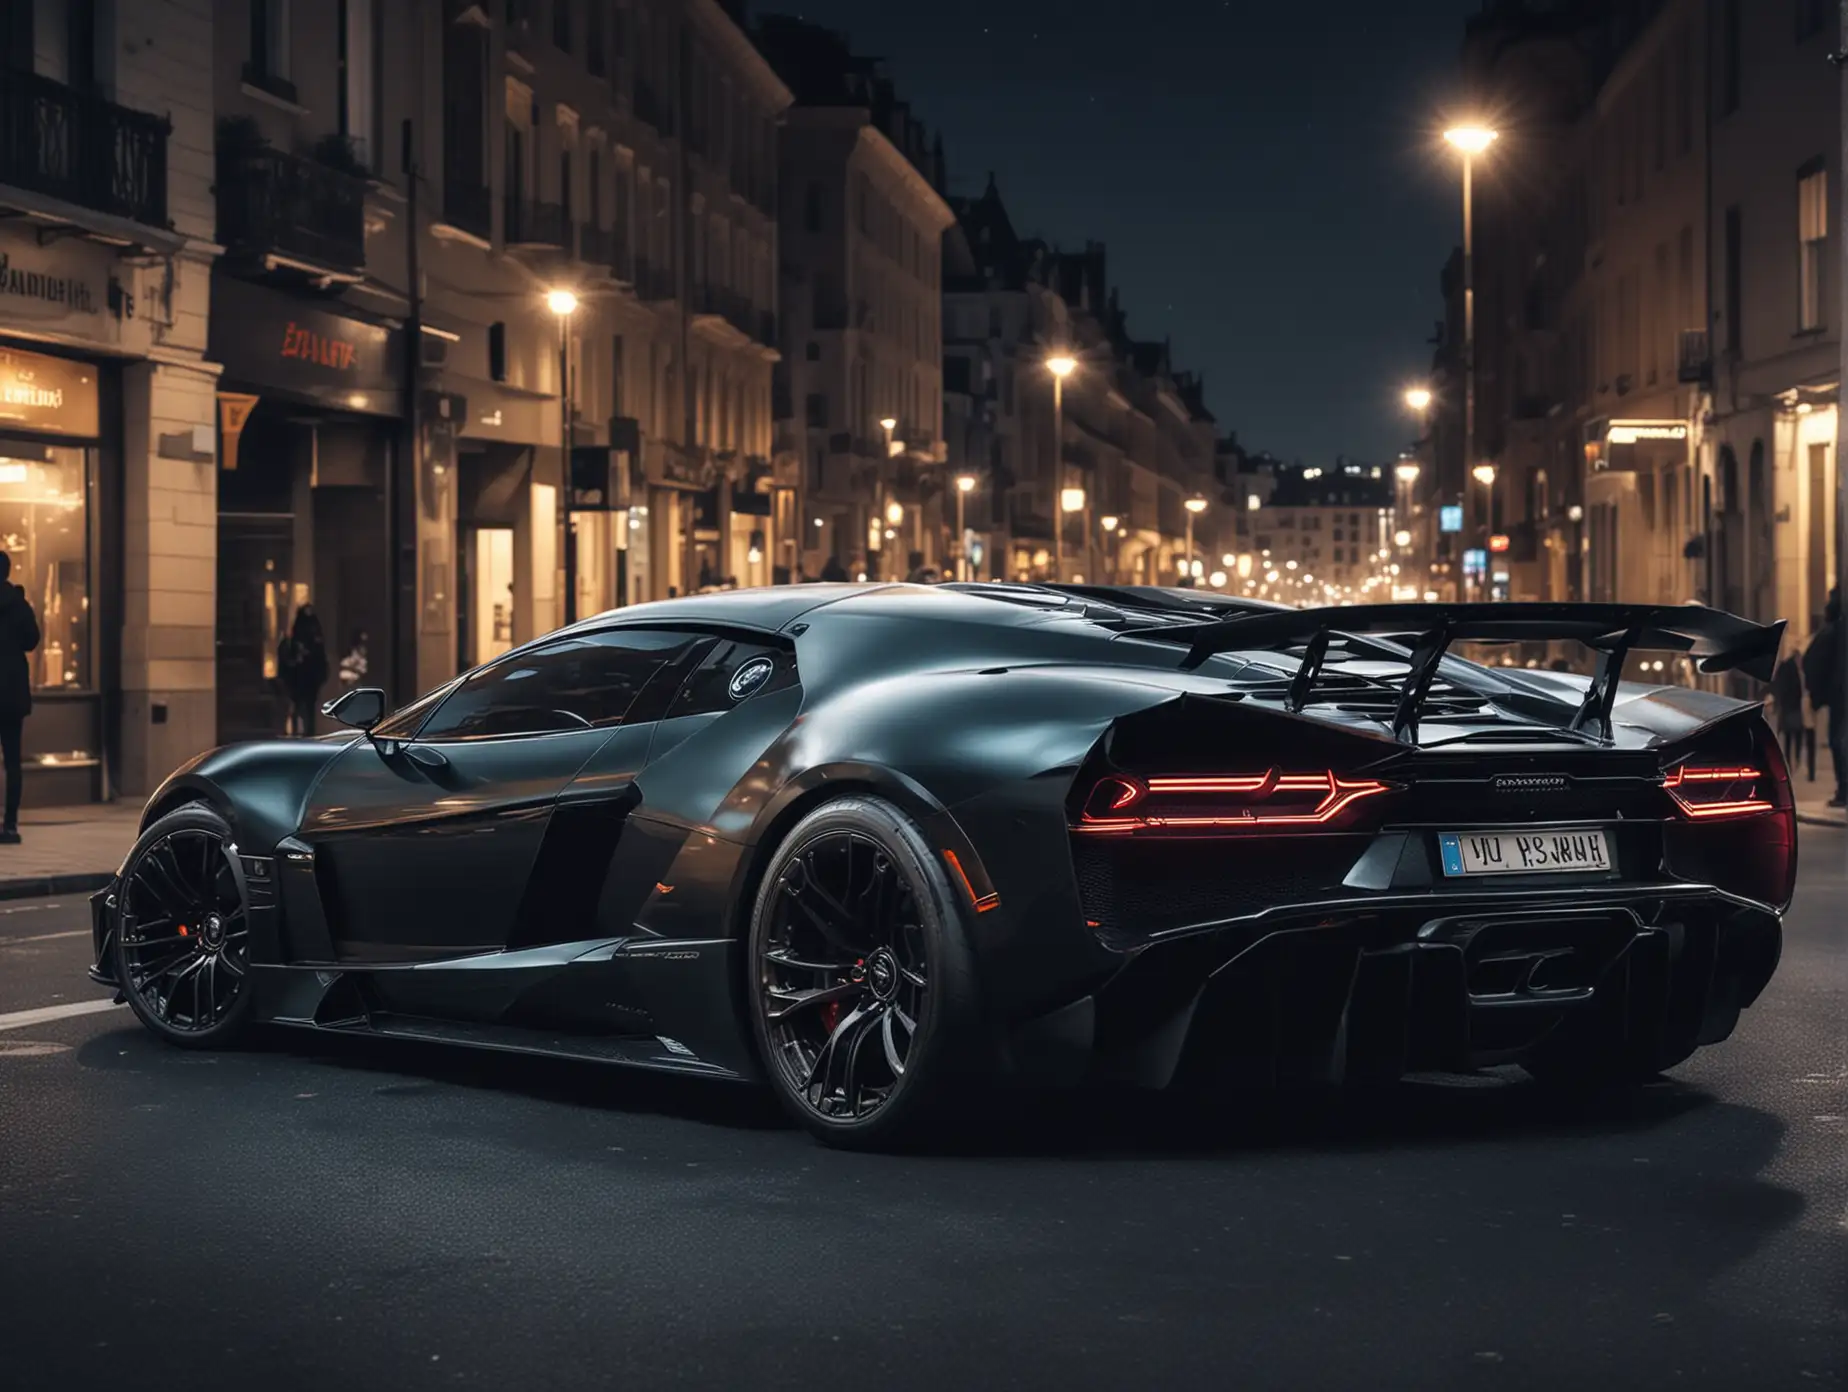 Futuristic-Bugatti-and-Lamborghini-Concept-Cars-Racing-Through-Night-Cityscape-in-Dark-Tones